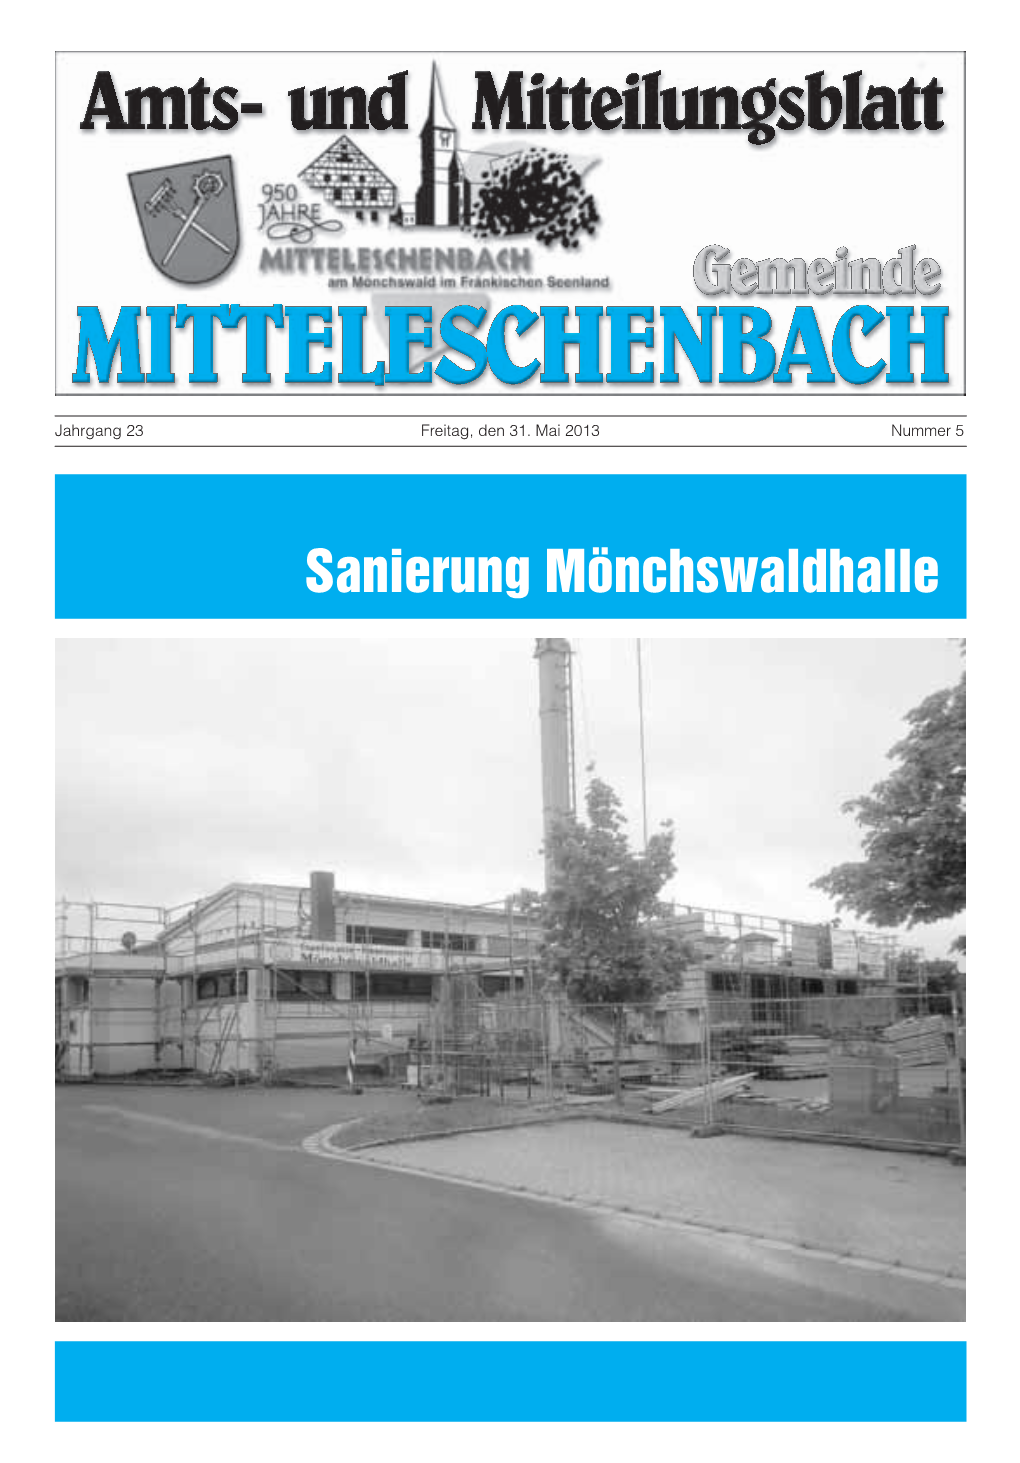 Sanierung Mönchswaldhalle Mitteleschenbach - 2 - Nr